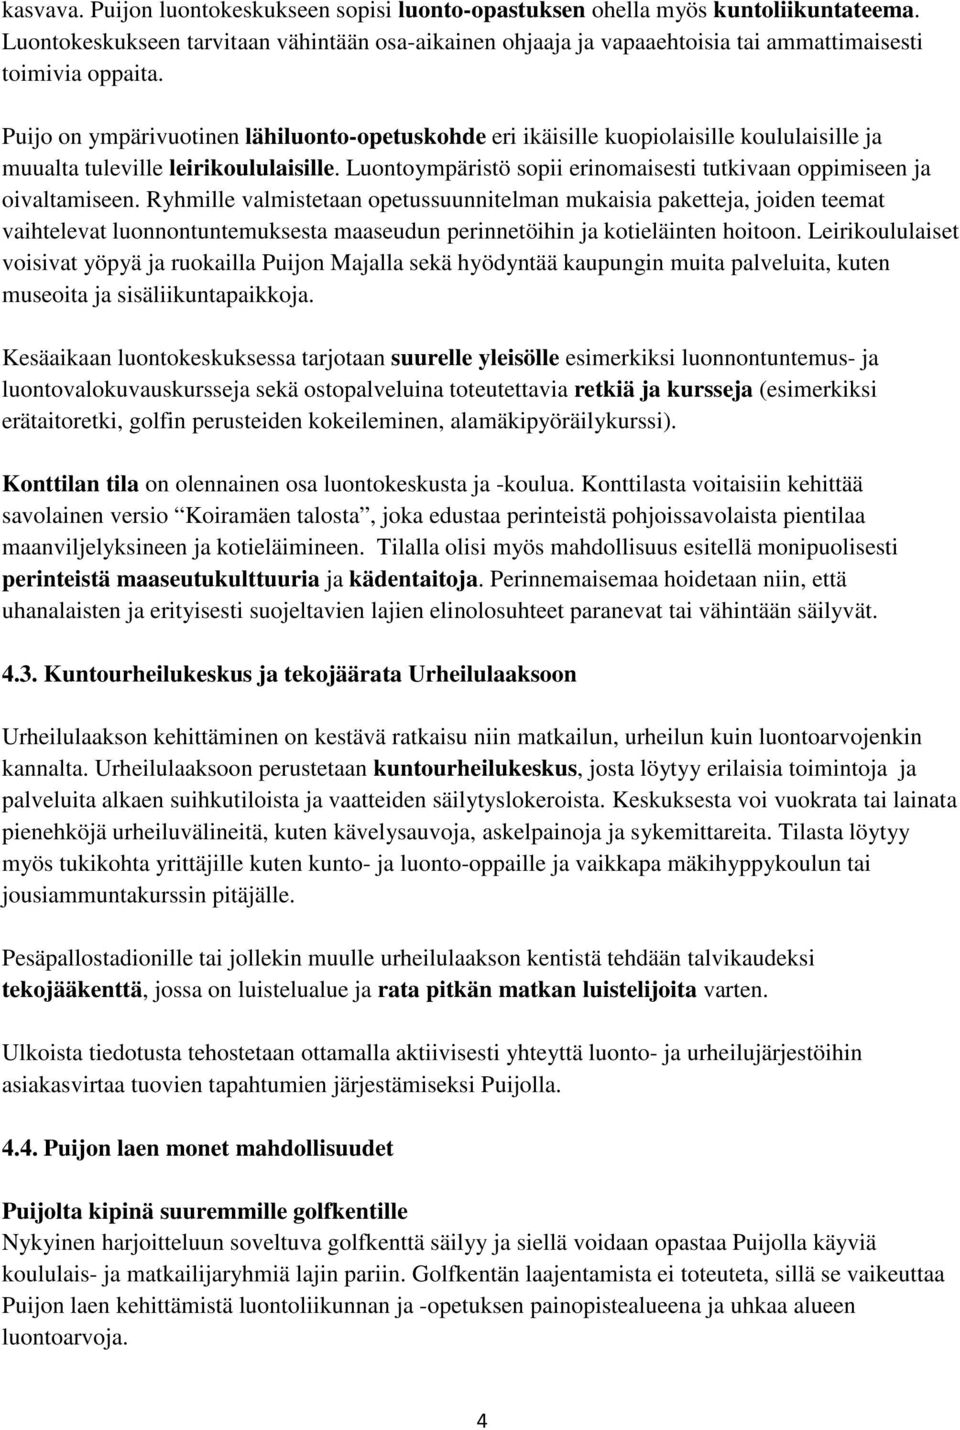 Puijo on ympärivuotinen lähiluonto-opetuskohde eri ikäisille kuopiolaisille koululaisille ja muualta tuleville leirikoululaisille.